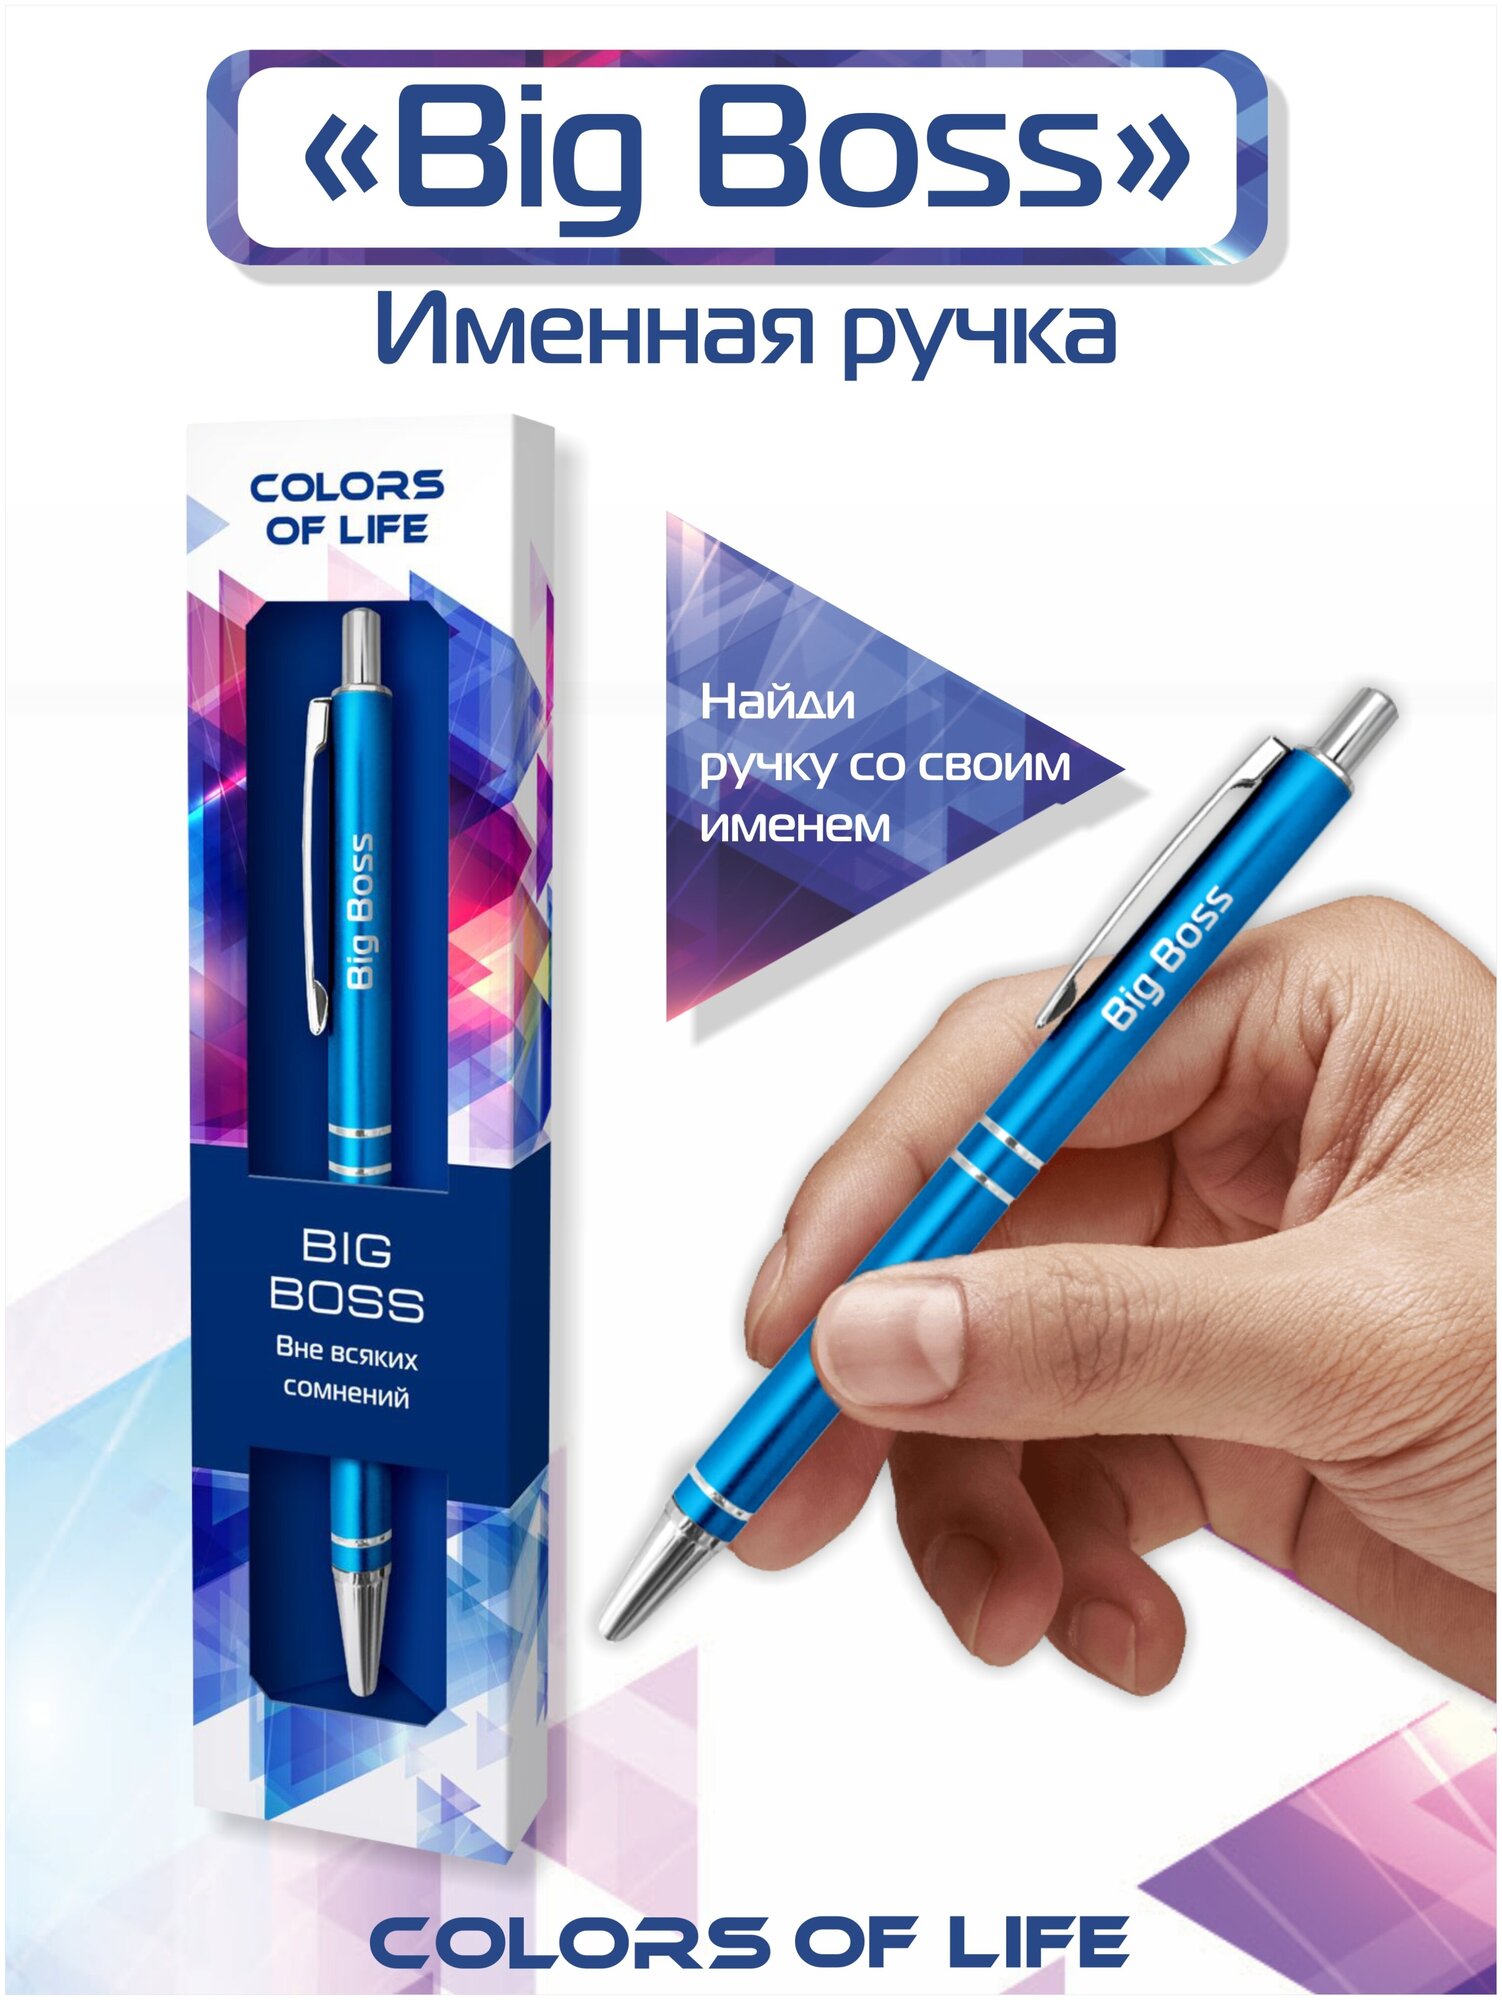 Ручка подарочная именная Colors of life с надписью "Big Boss"